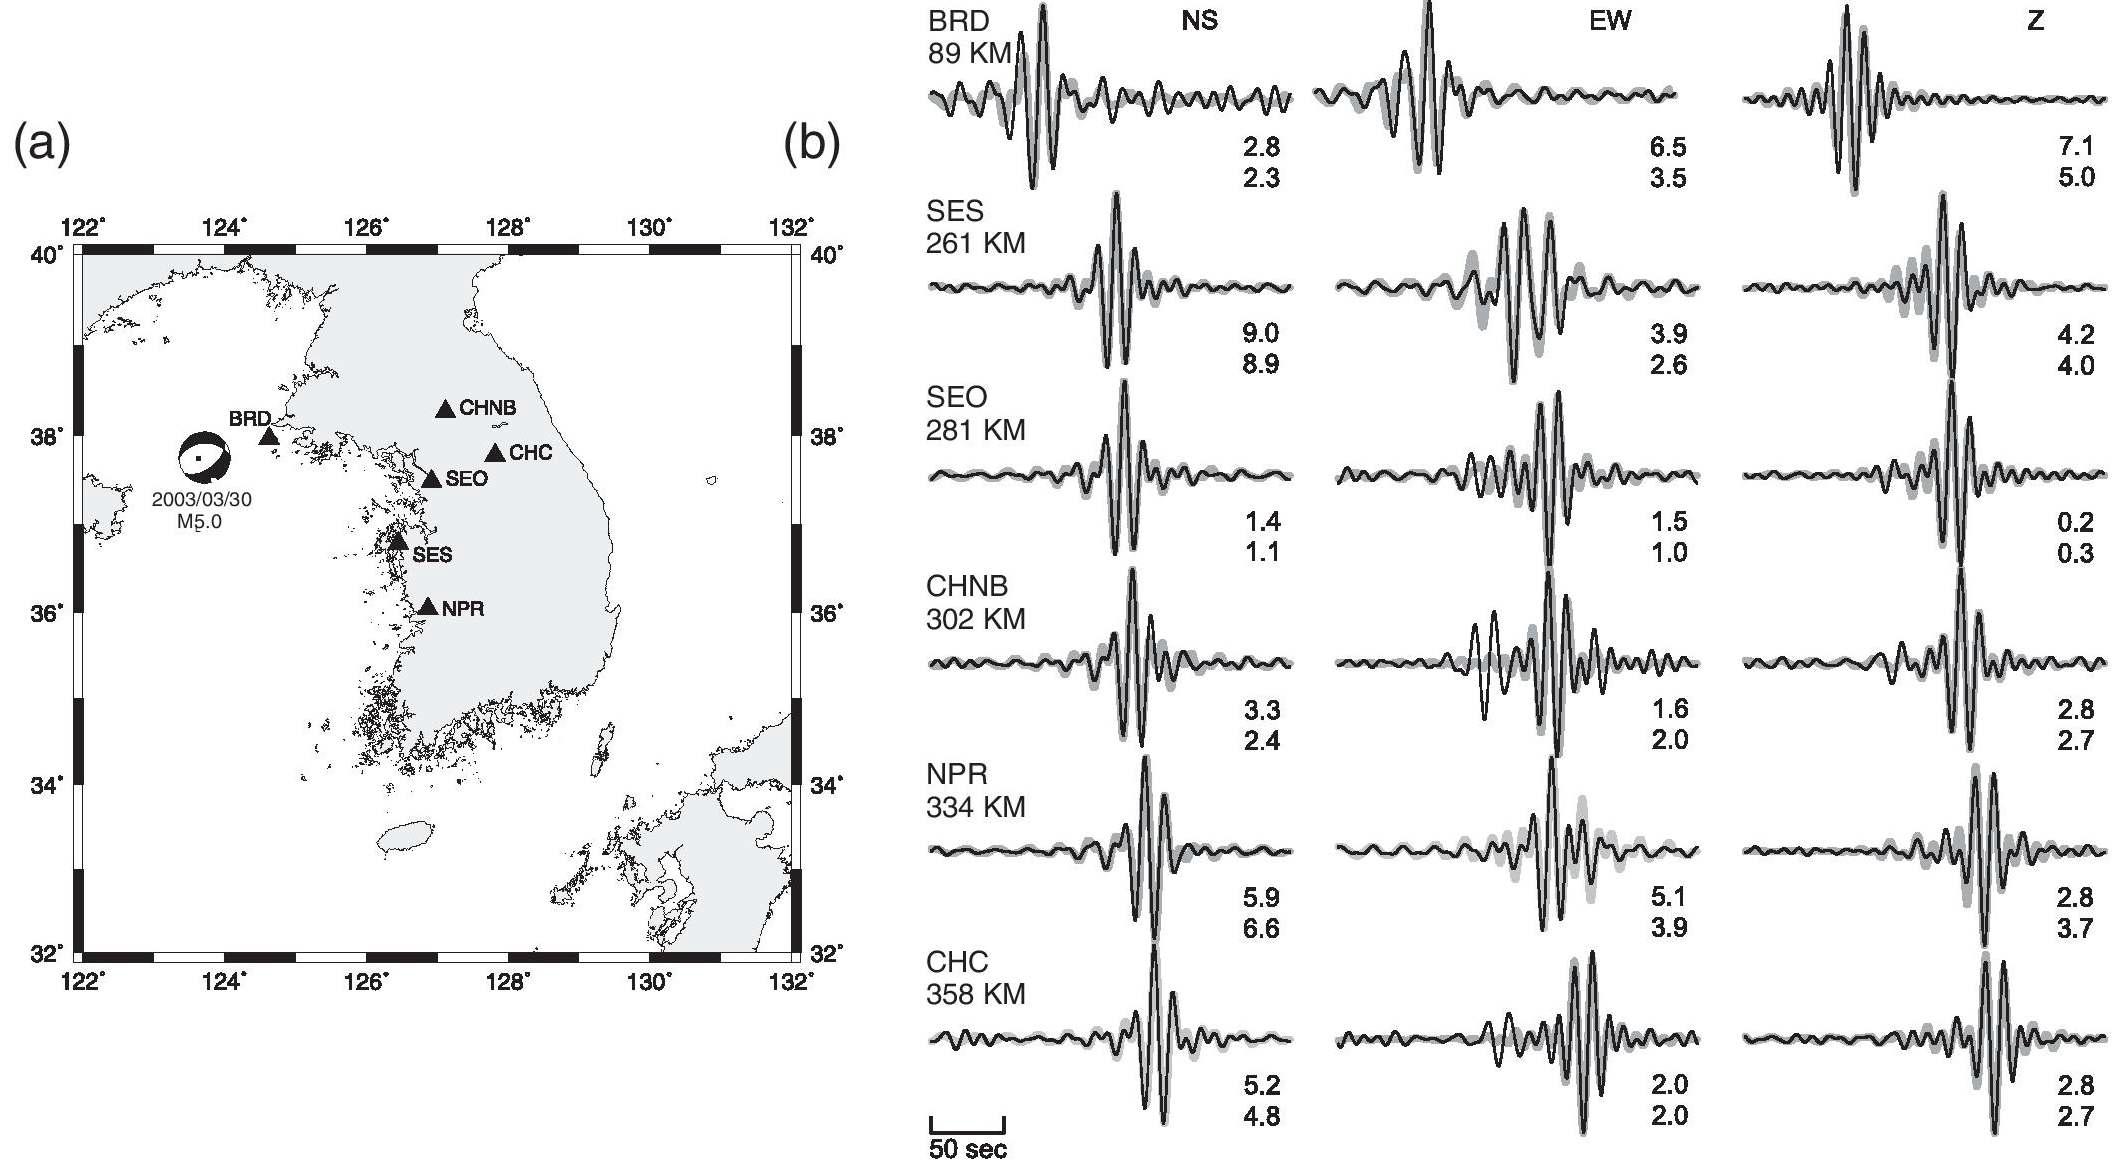 황해에서 발생한 2003년 3월 30일  5.0 지진의 단층면해를 구하기 위한 장주기 파형자료 분석. (a) 지 진과 관측소를 나타낸 지도. (b) 인공 및 관측 파형자료의 비교. 분석된 자료는 6개 관측소 (BRD, SES, SEO, CHNB, NPR, CHC)에서의 삼성분 광대역 파형자료이다. 관측 파형 (얇은 실선)이 인공 파형 (두꺼운 실선)과 비교 되어 있다. 인공 파형은 관측 파형과 잘 일치한다. 진앙거리가 표기되어 있으며, 관측 및 인공 파형의 최대 진폭 값 (각각 위 숫자, 아래 숫자)이  m 단위로 표기되어 있다.